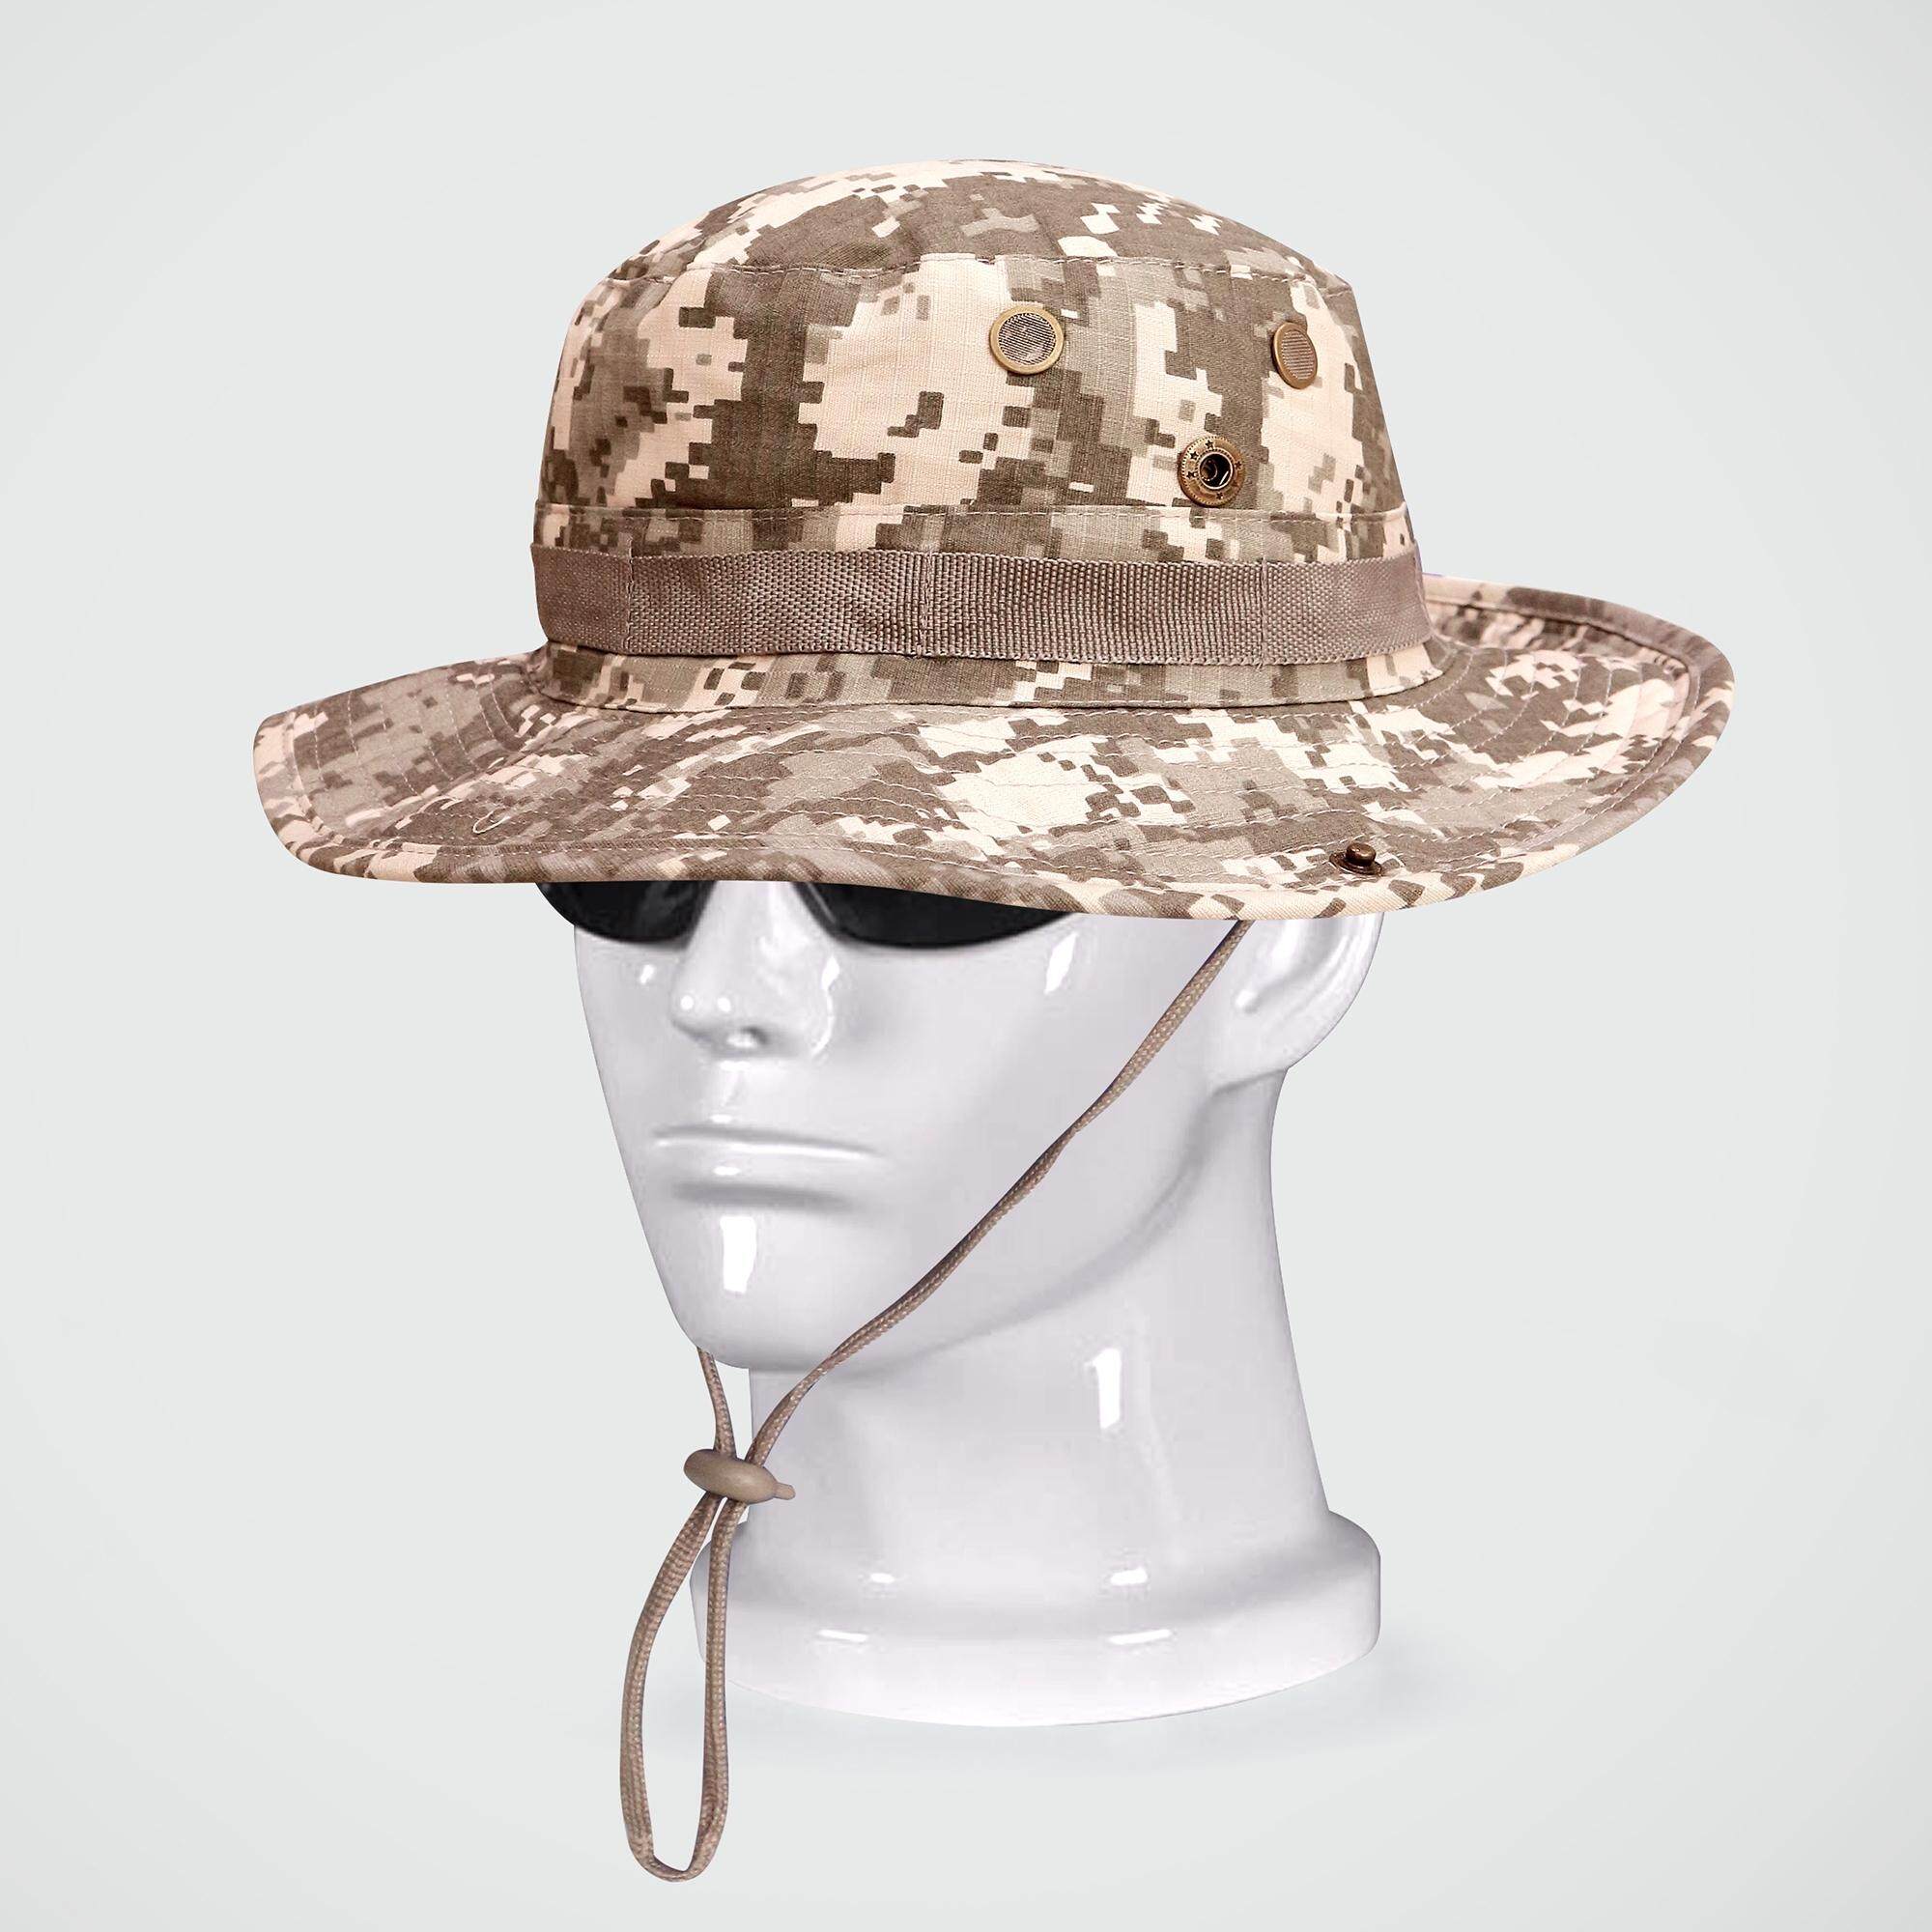 หมวกปีก มี 12 แบบ หมวก หมวกปีกกว้าง หมวกทหาร  หมวกลายทหาร หมวกลายพราง หมวกปีกลายทหาร Update 22/04/64